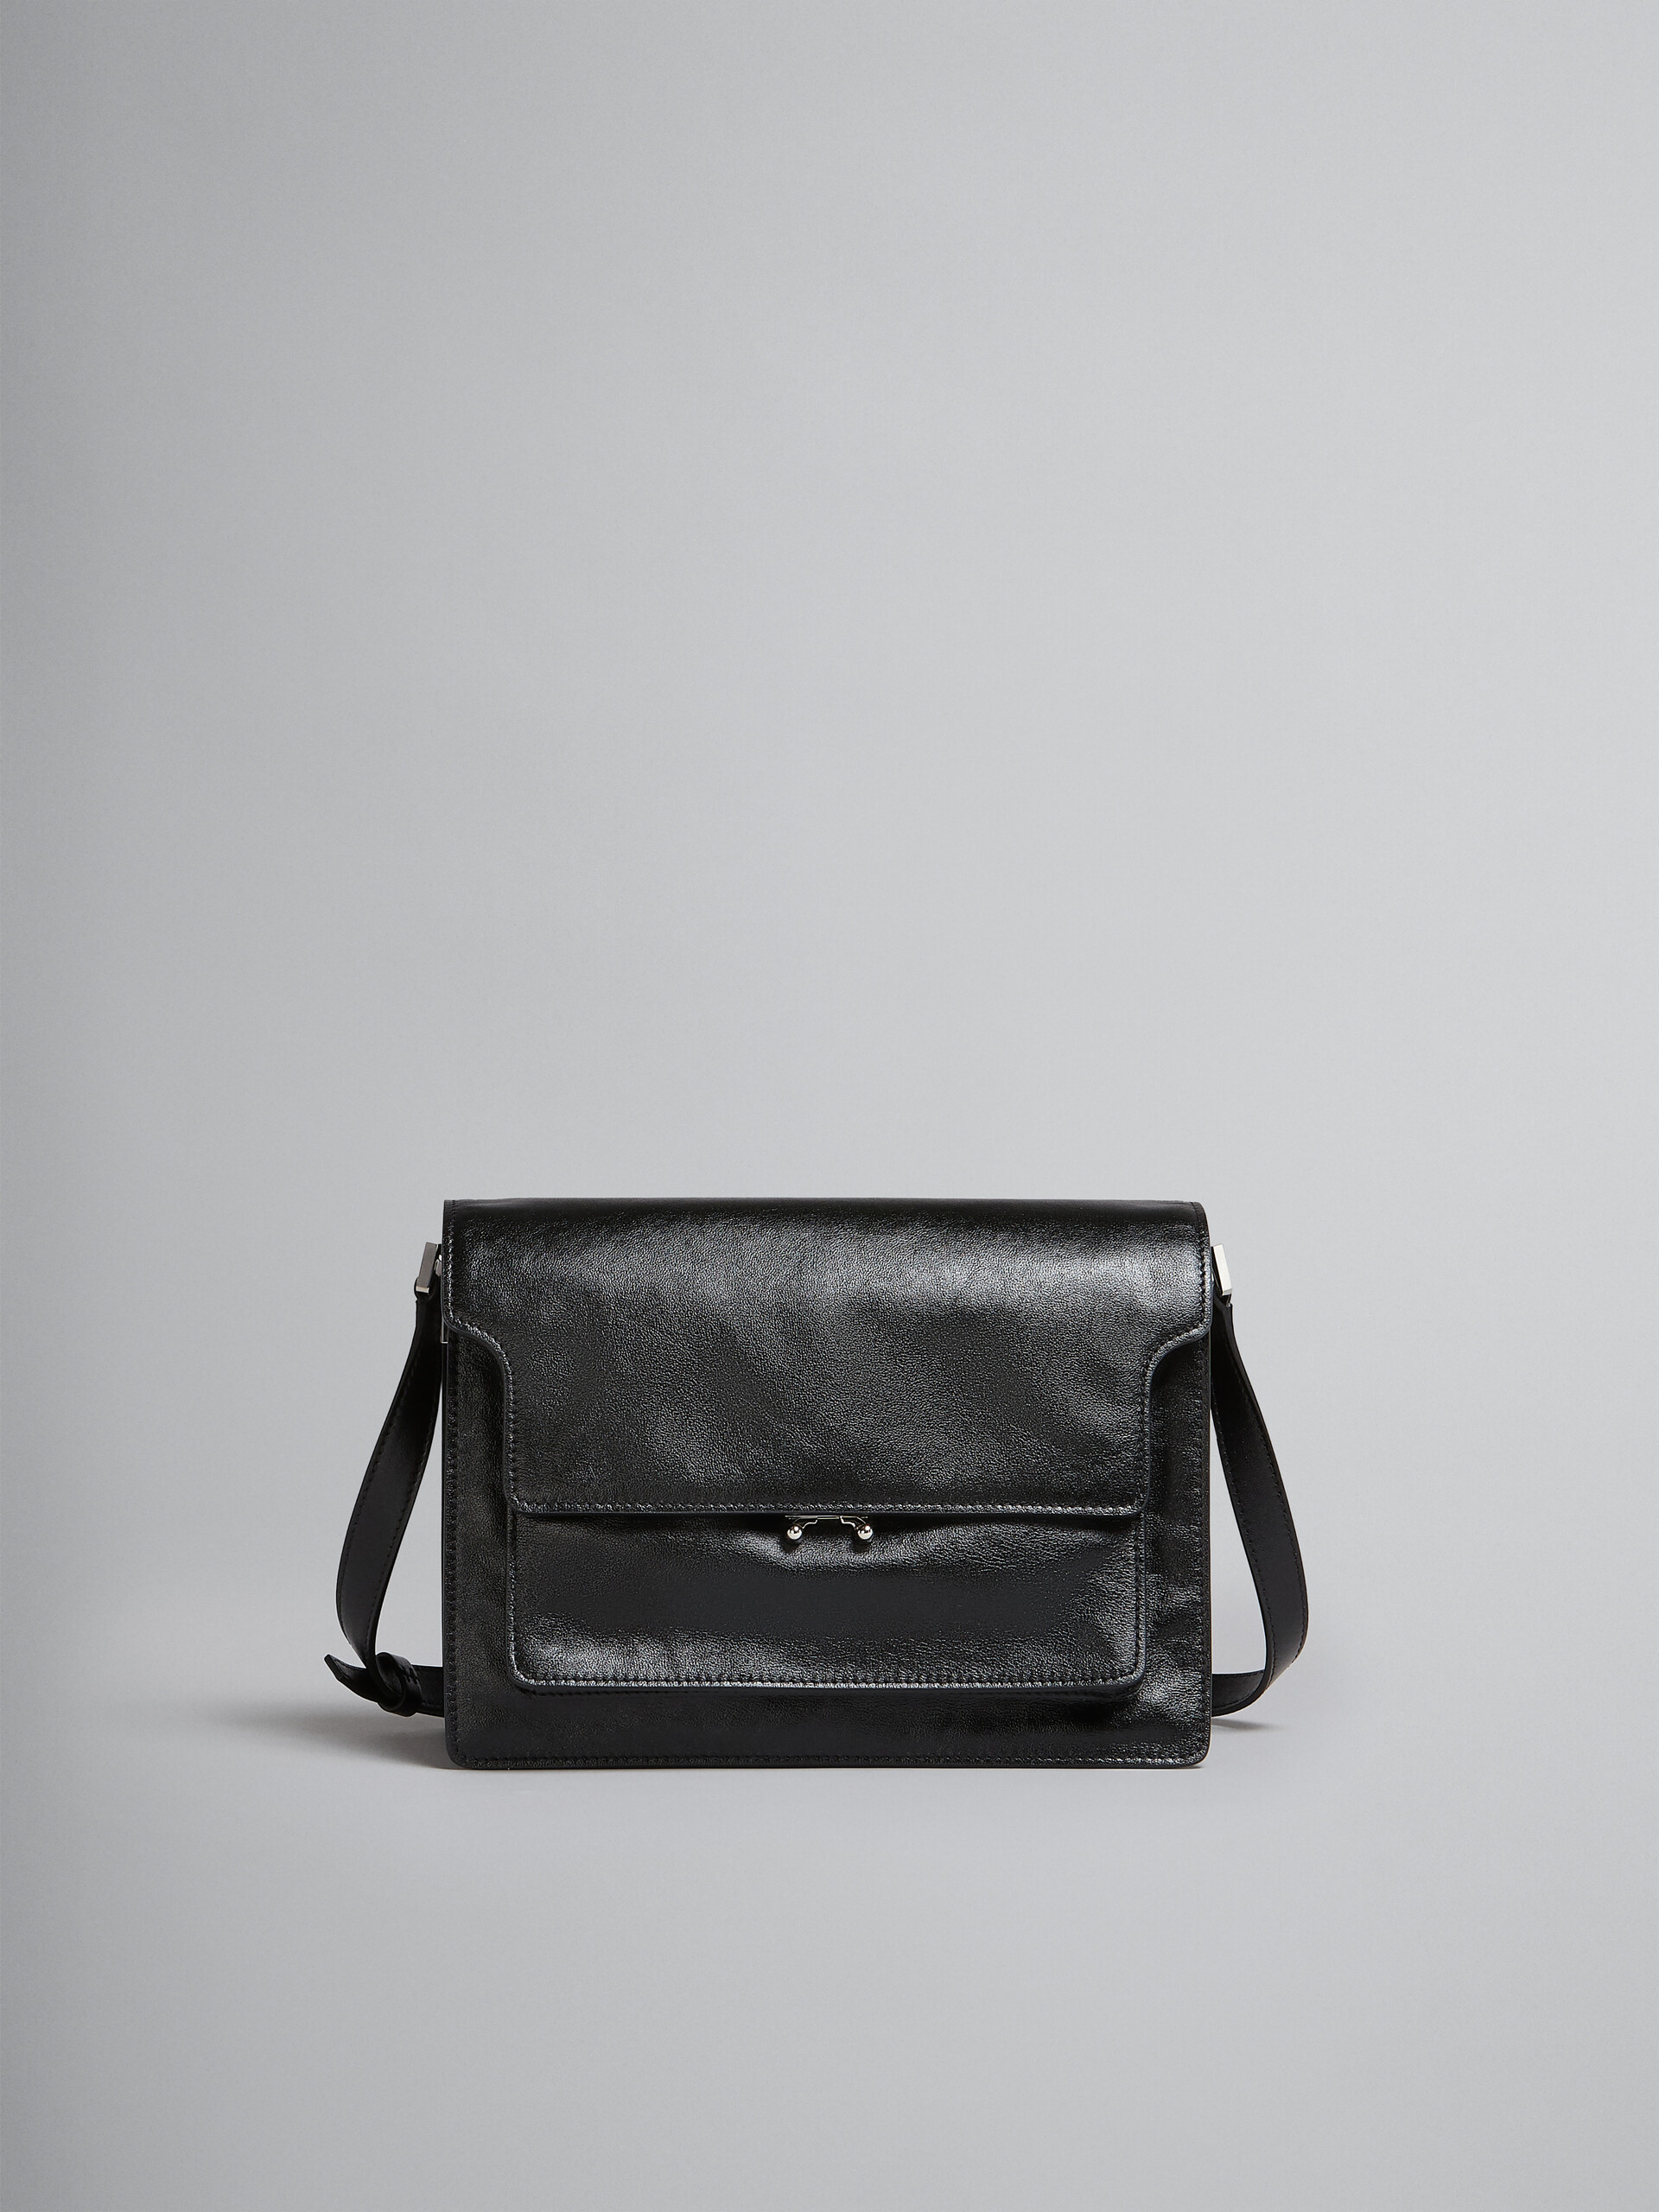 Trunk Soft Bag Grande in pelle nera - Borse a spalla - Image 1